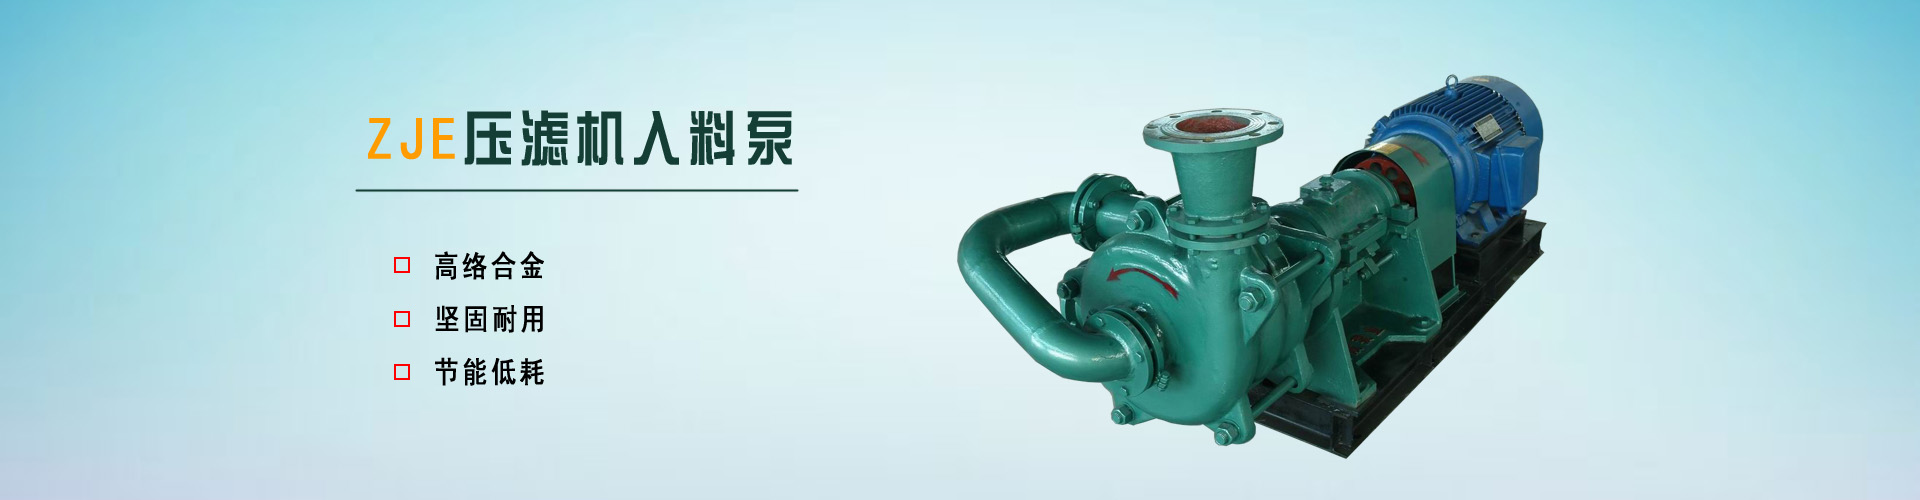 河北仁腾水泵制造有限公司